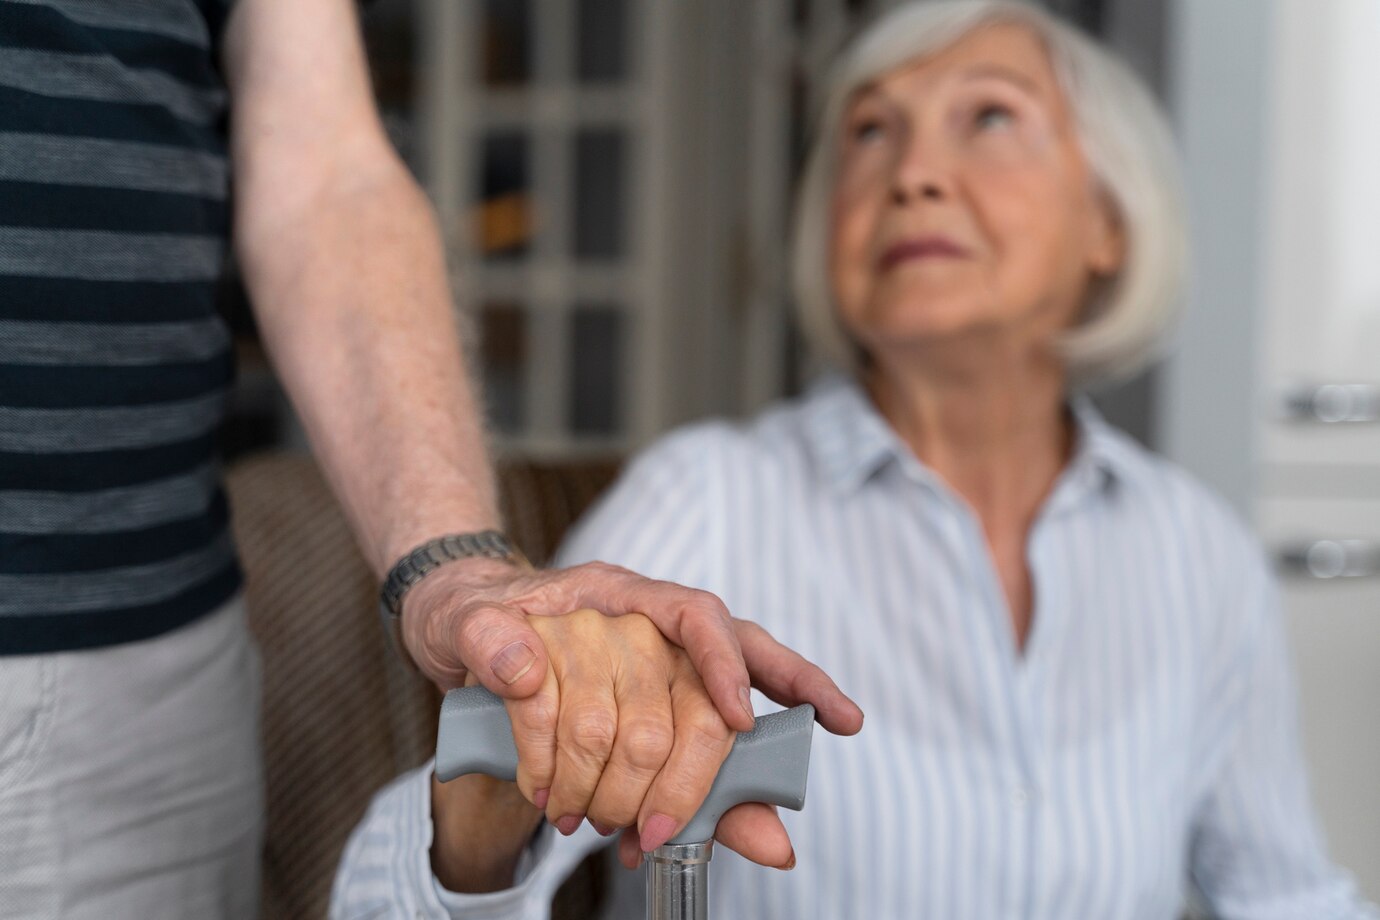 Pomoce sensoryczne i antystresowe marki Relish dla niespokojnych rąk seniorów z demencją